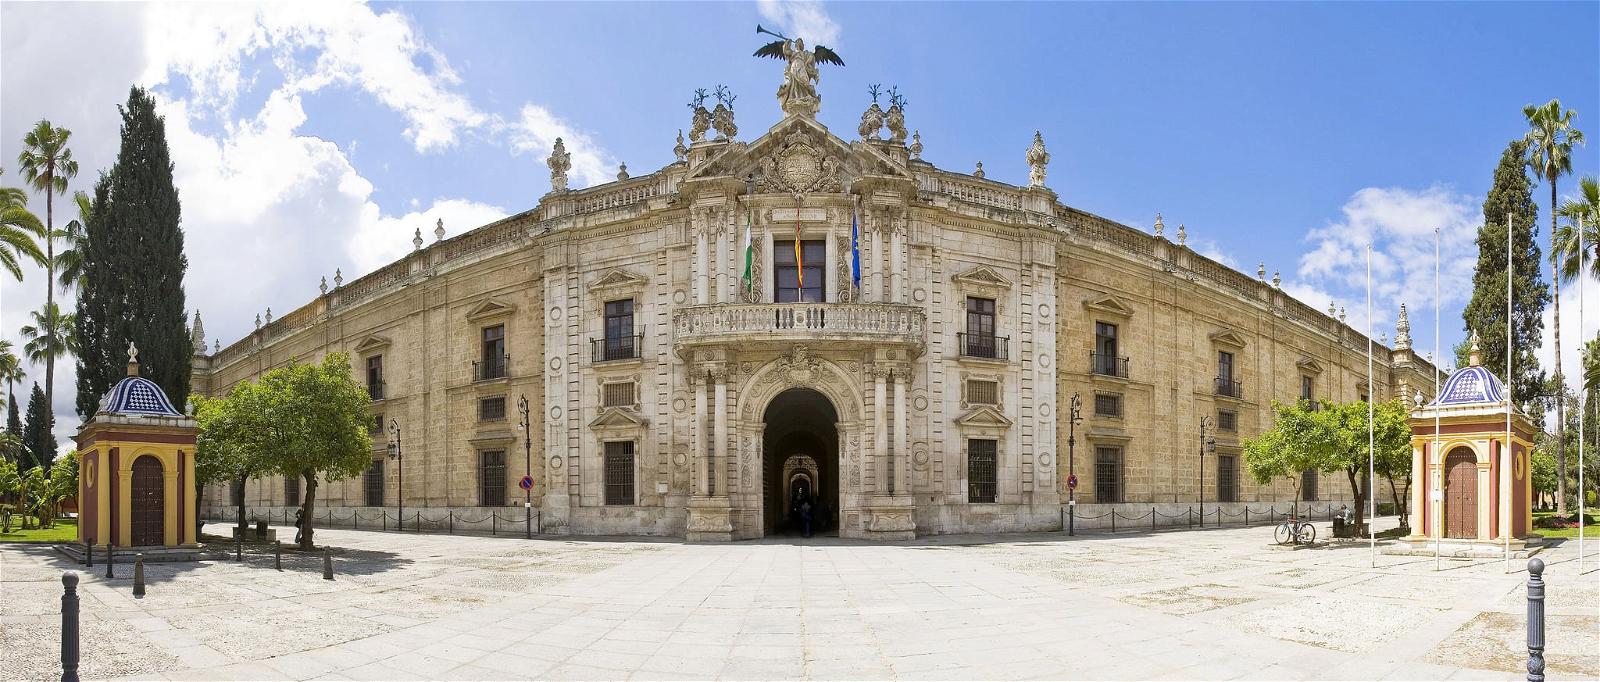 Universidad de Sevilla - Rectorado की छवि. de arquitectura urbana fabrica geografia universidaddesevilla sigloxviii tabacos